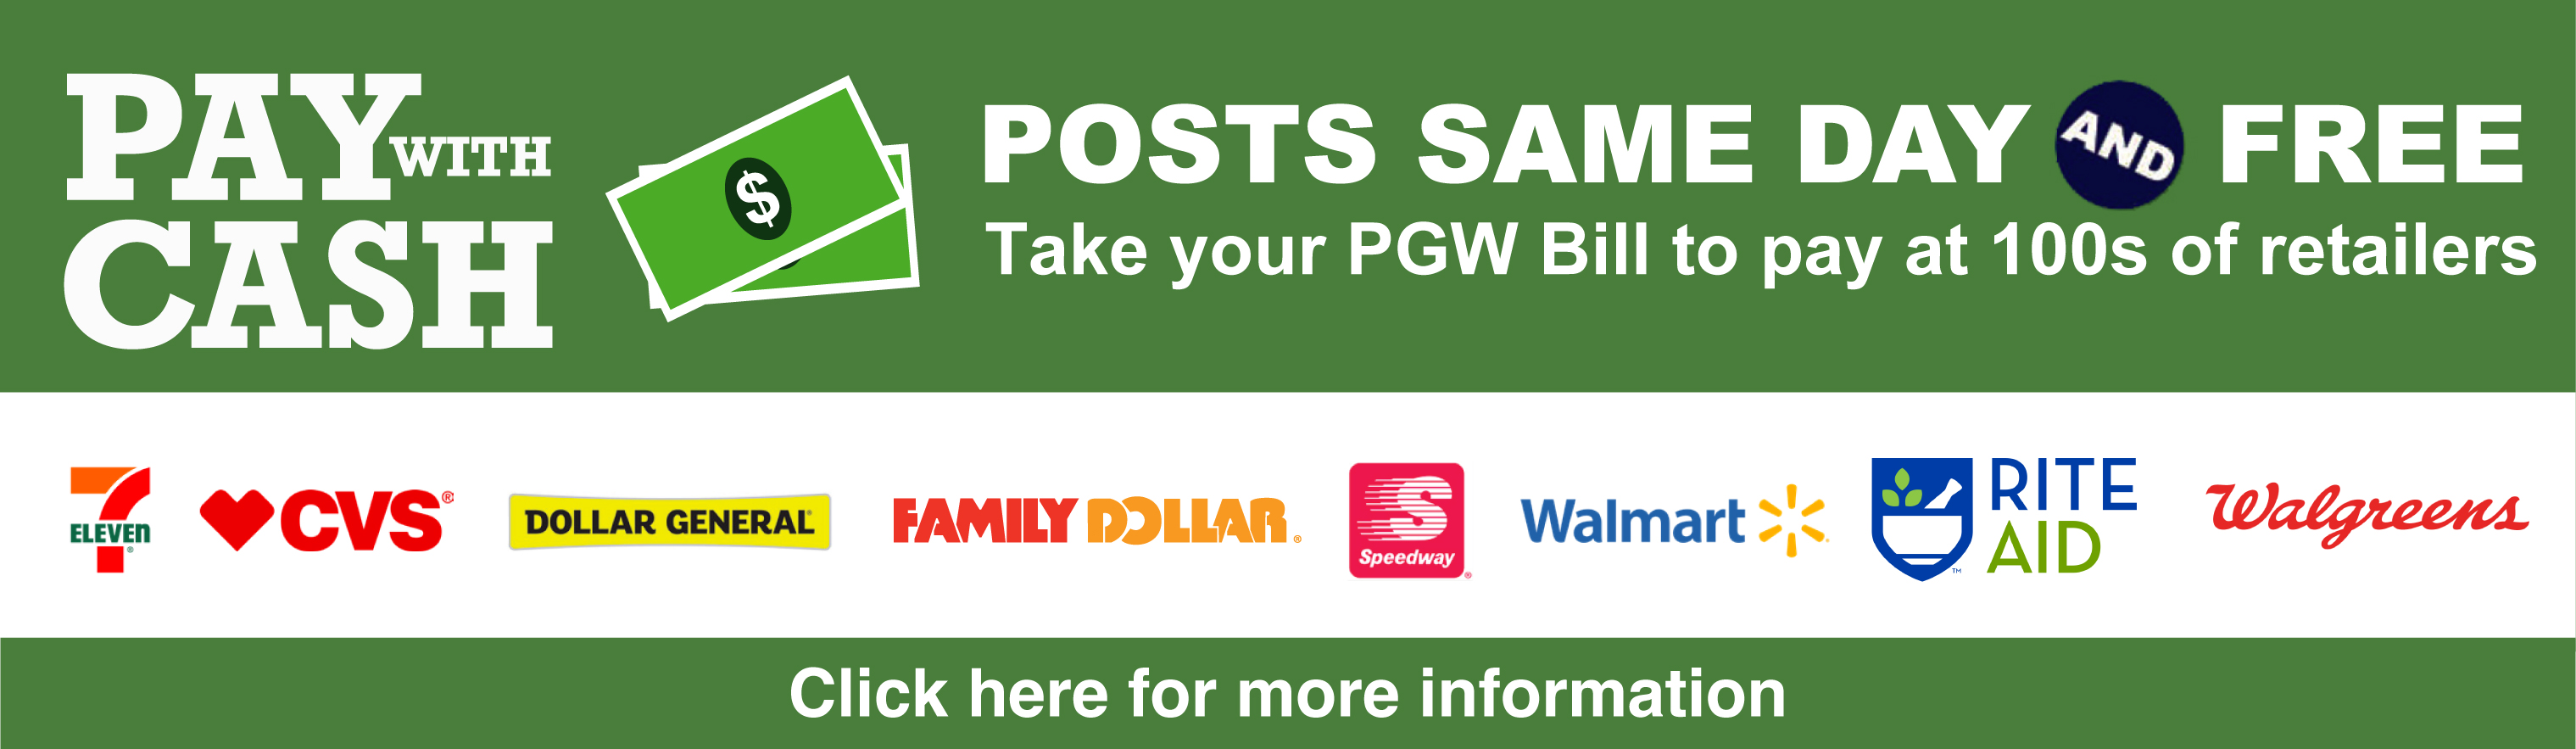 ways-to-pay-pgw-philadelphia-gas-works